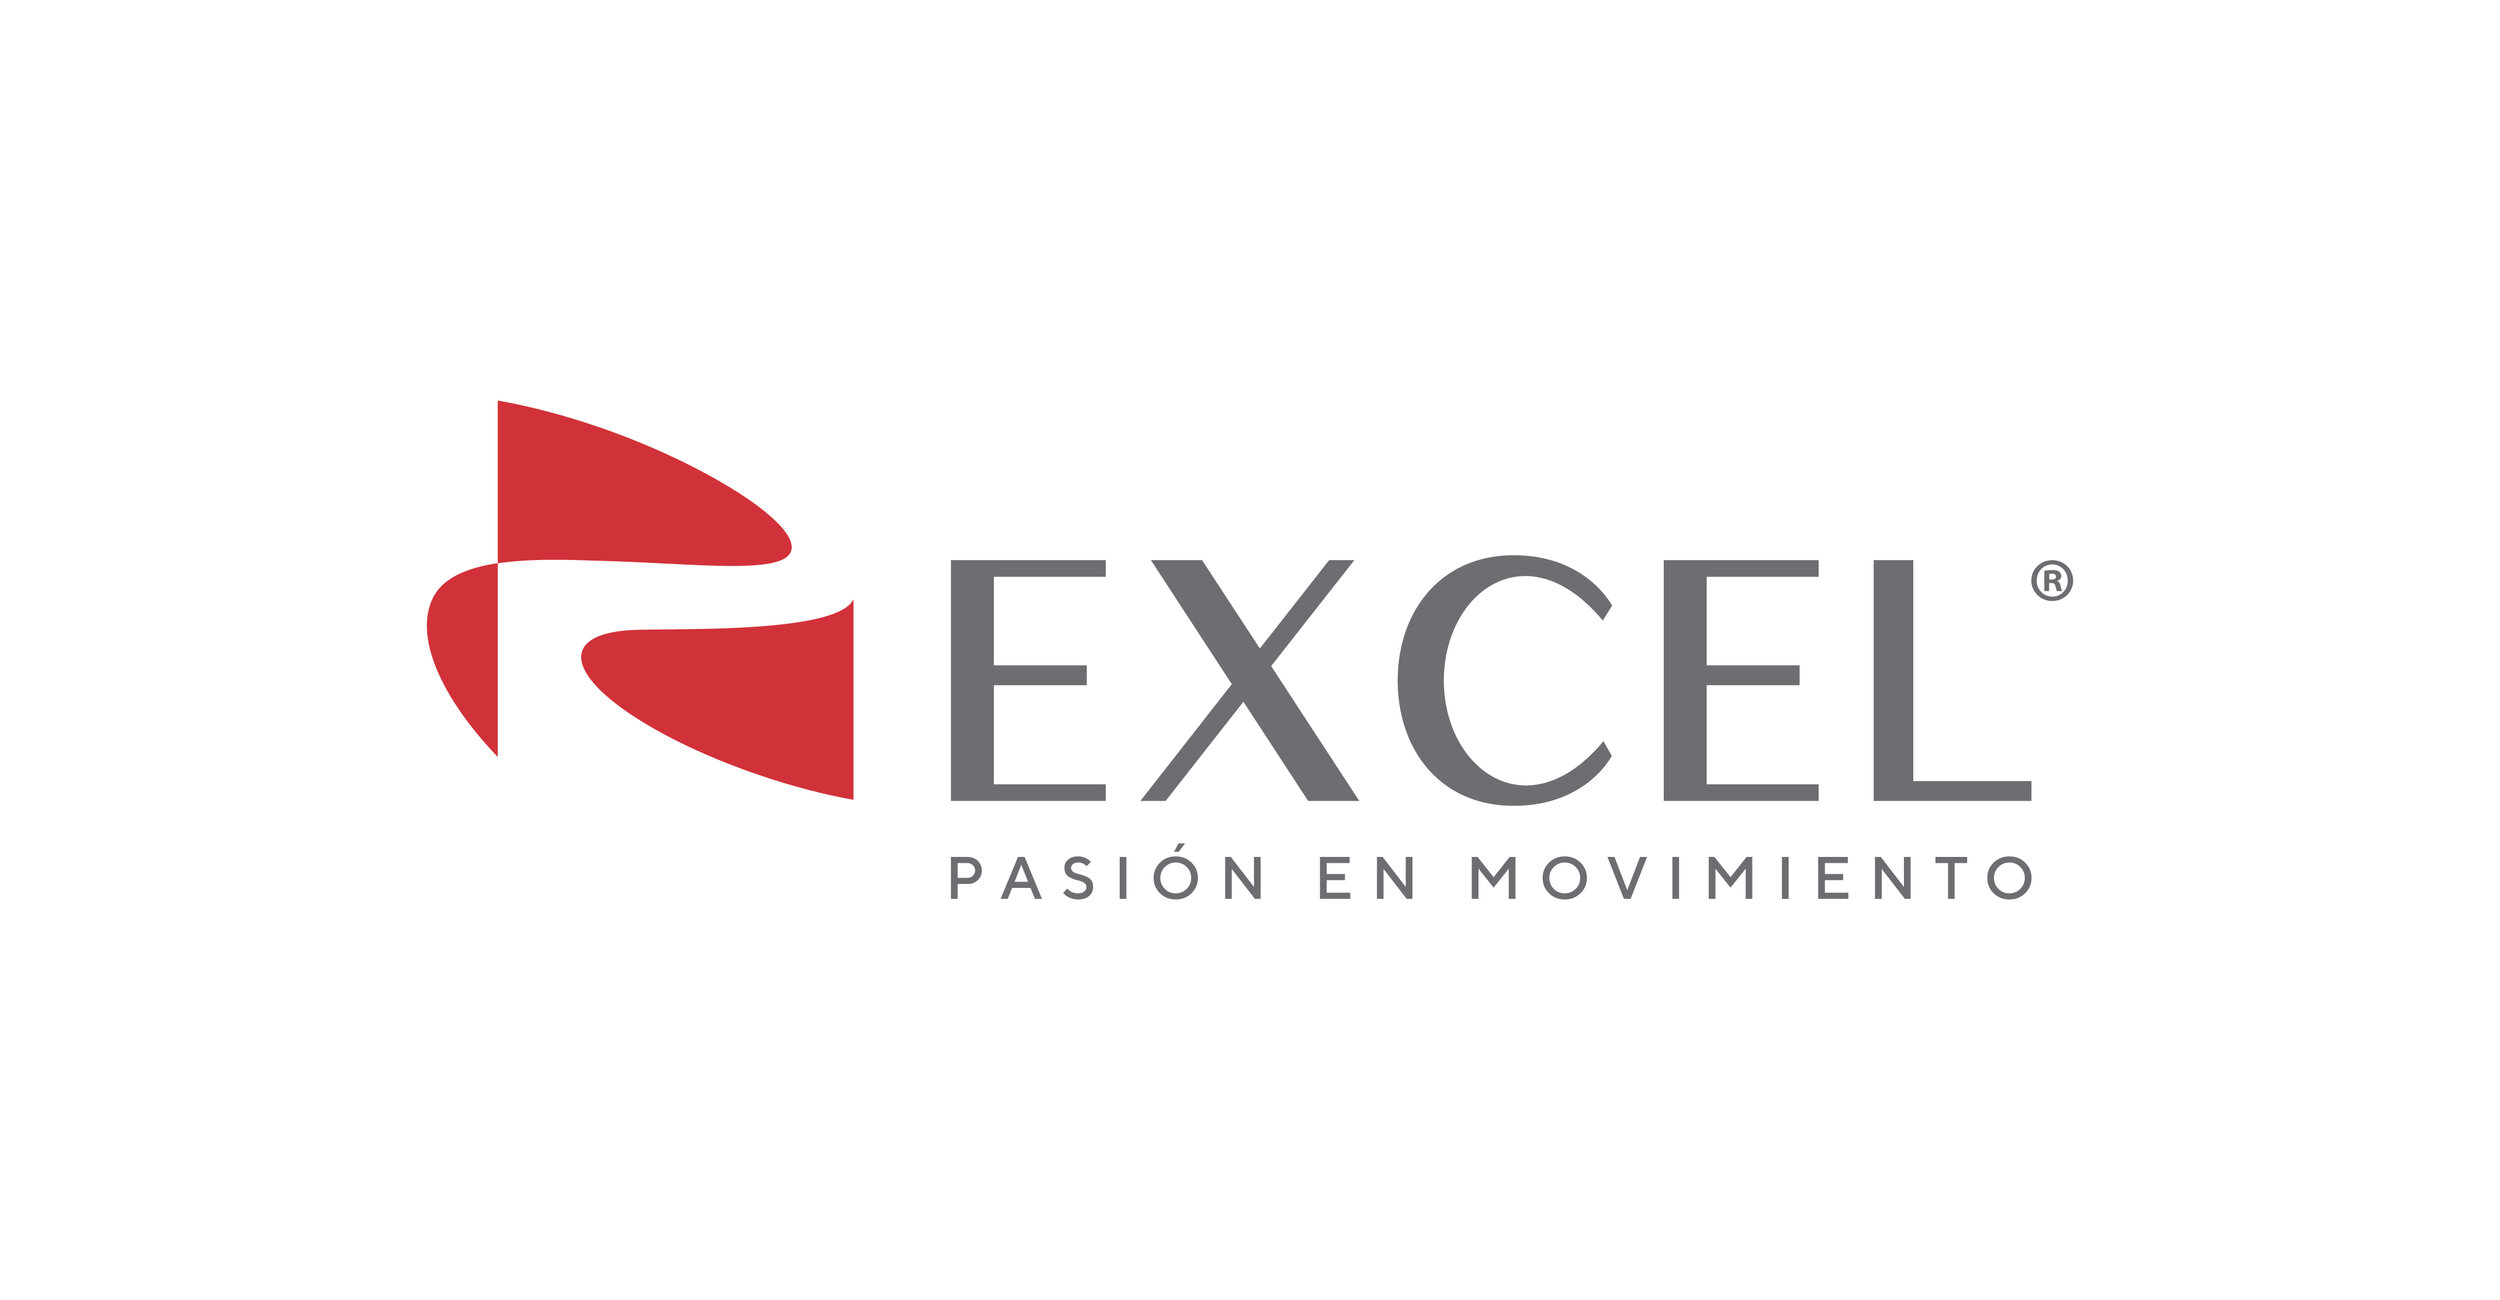 Nuevo logo Excel.jpg